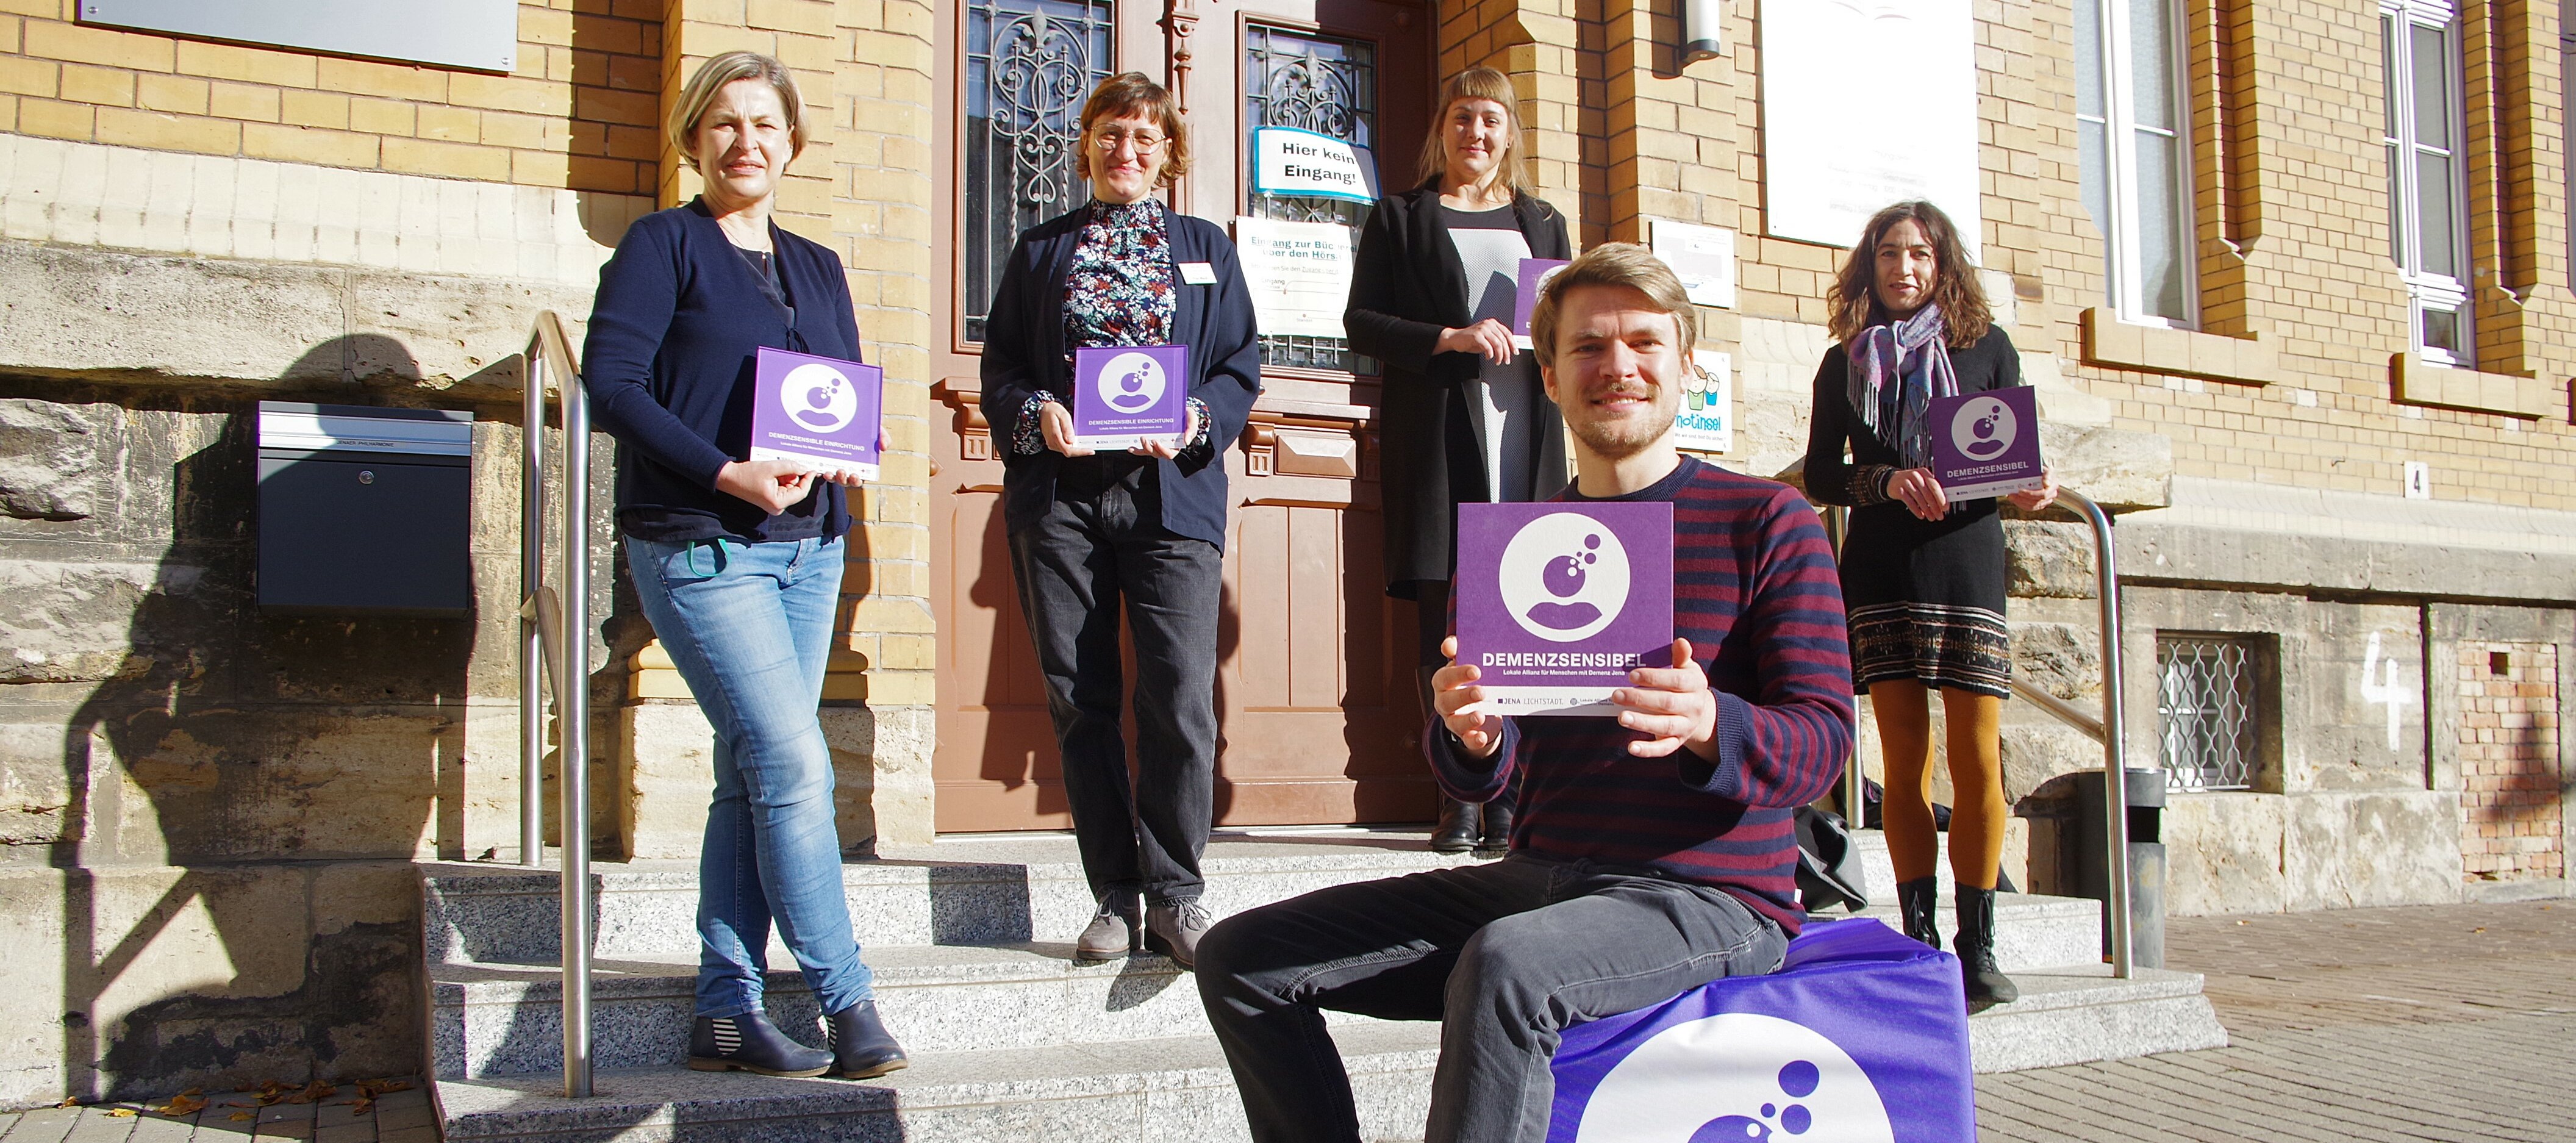 Verleihung der Demenzsensibel-Plakette an die Ernst-Abbe-Bücherei durch Mitglieder der Lokalen Allianz Jena